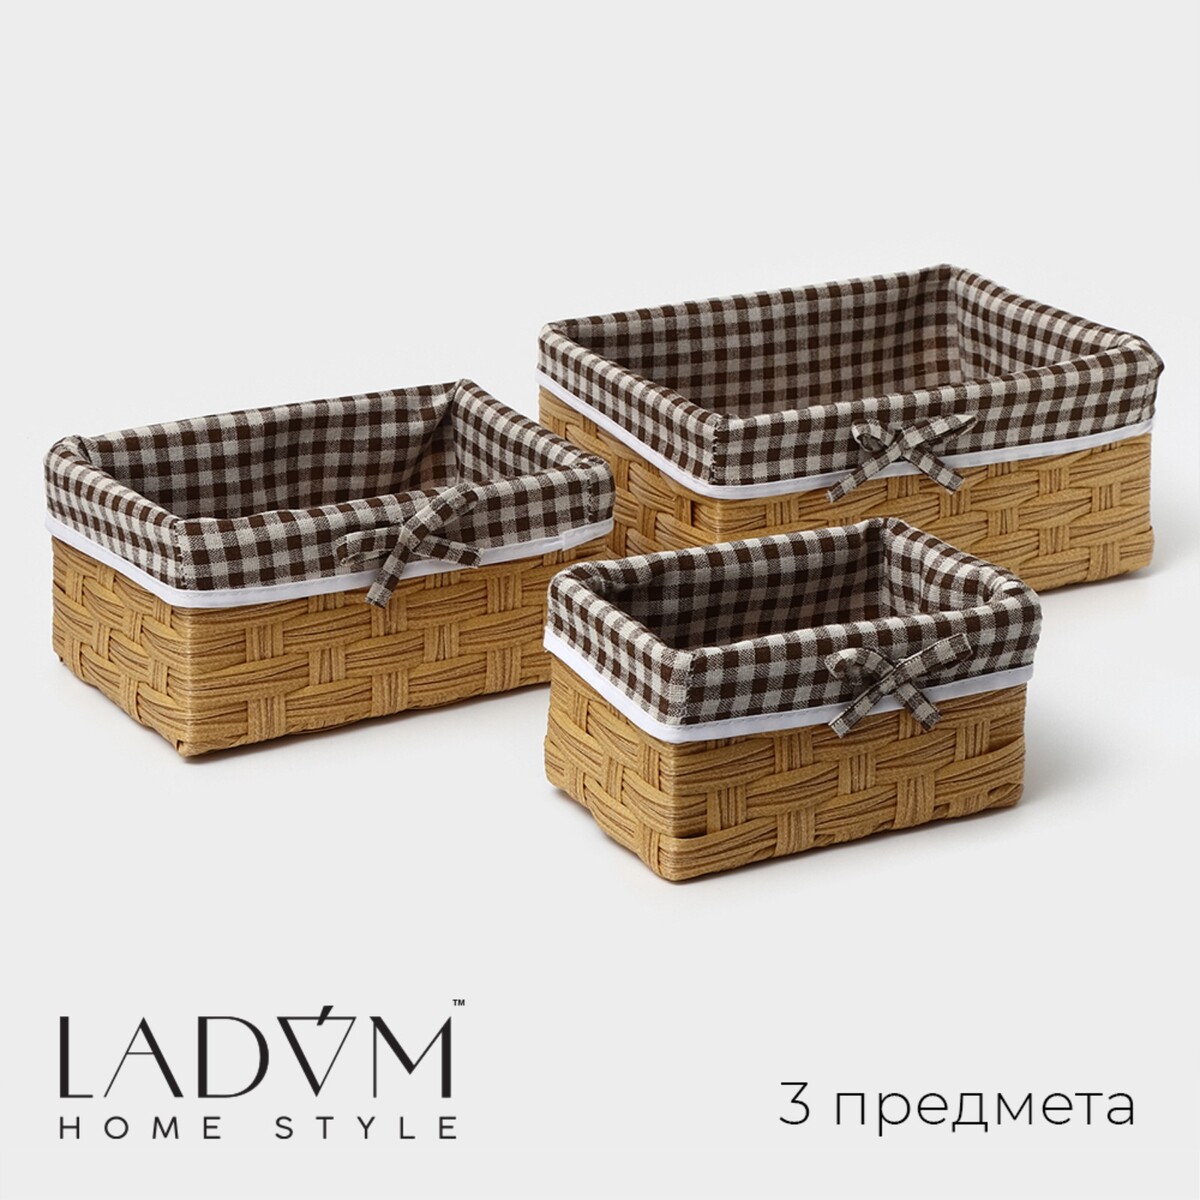 Набор корзин для хранения ladо́m, ручное плетение, 3 шт: от 18×12×9,5 см до 26×20×11,5 см, цвет коричневый